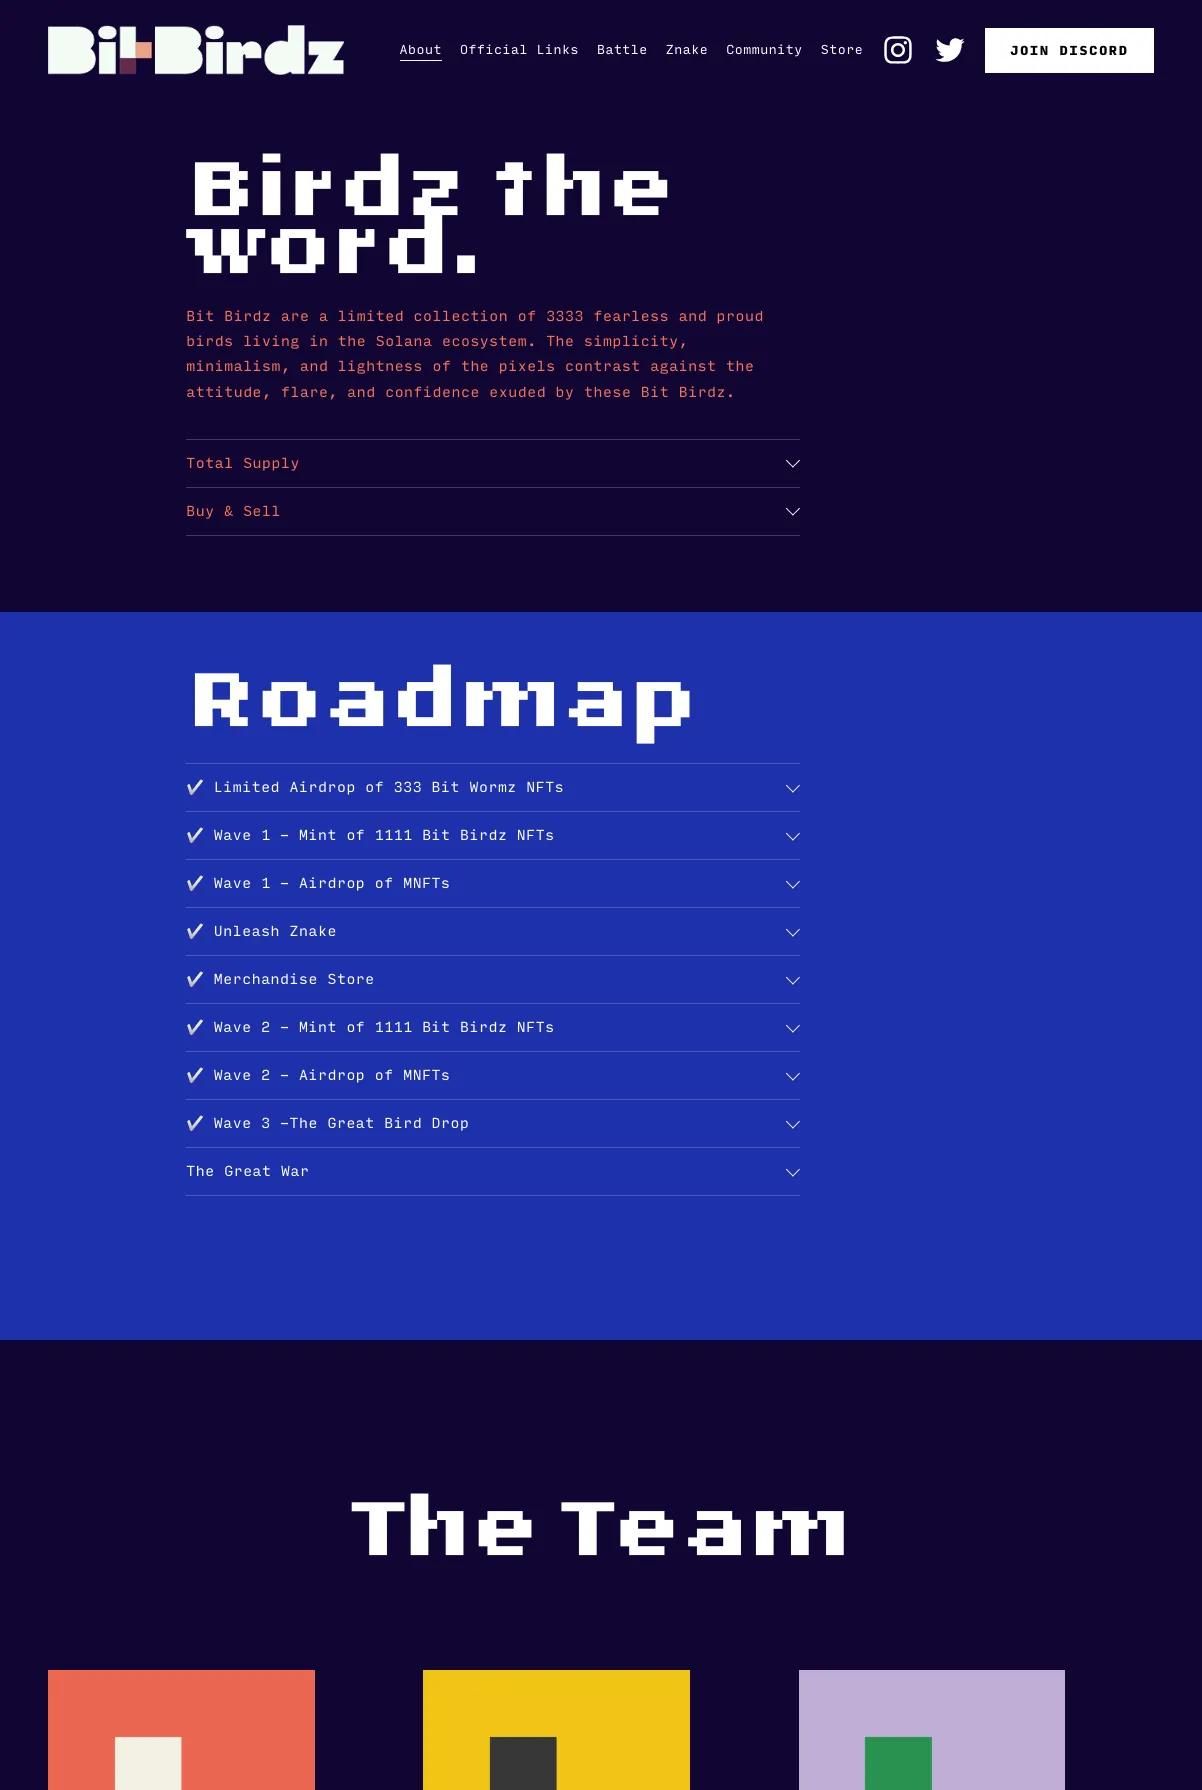 Screenshot 2 of Bit Birdz (Example Squarespace Ecommerce Website)